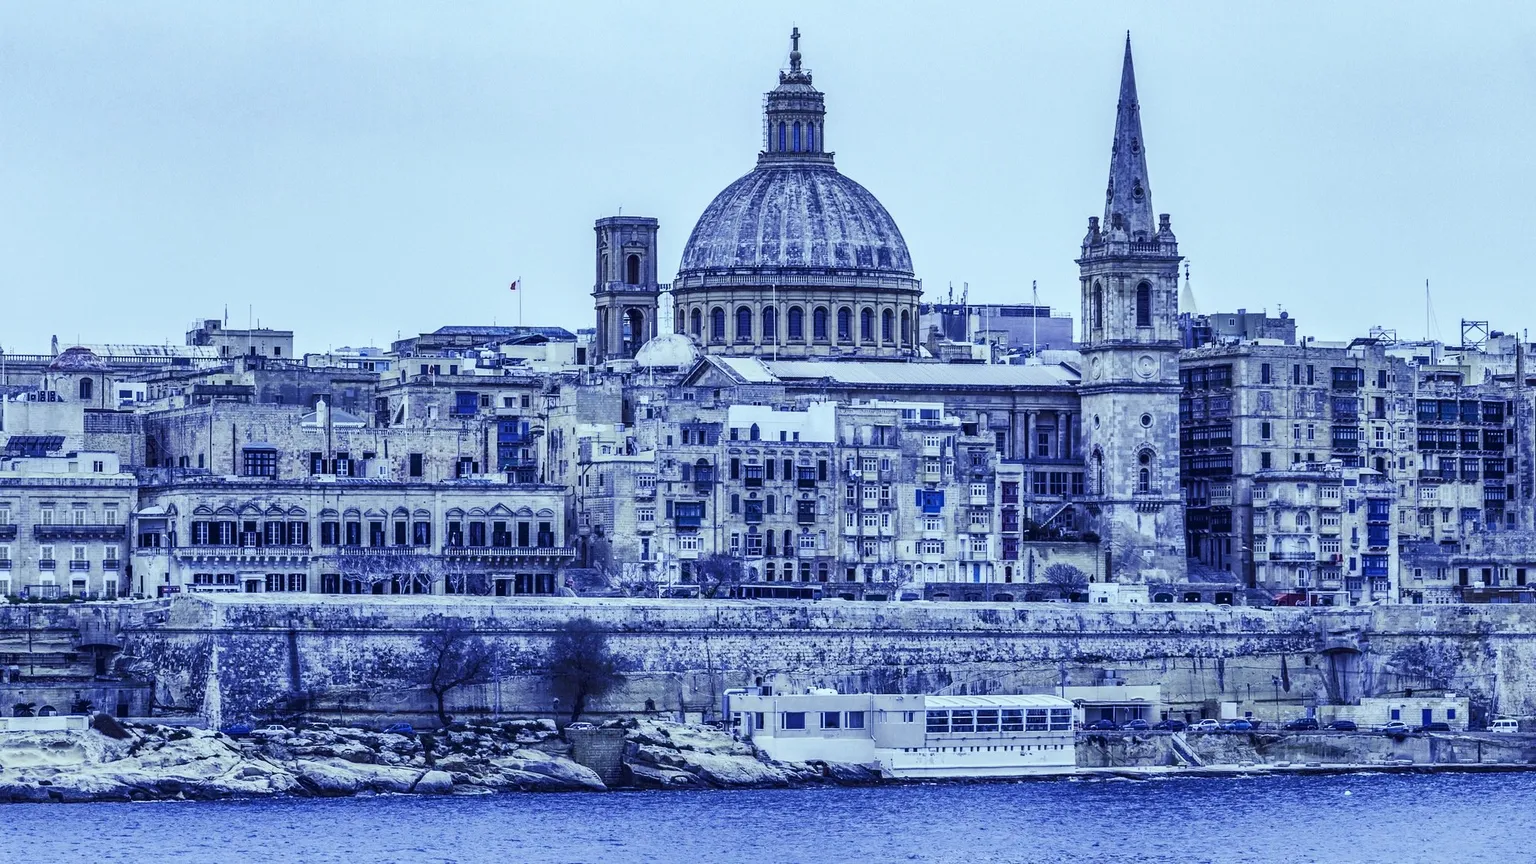 Malta se esfuerza por deshacerse de su reputación de evasión de impuestos y lavado de dinero. IMAGEN: Shutterstock